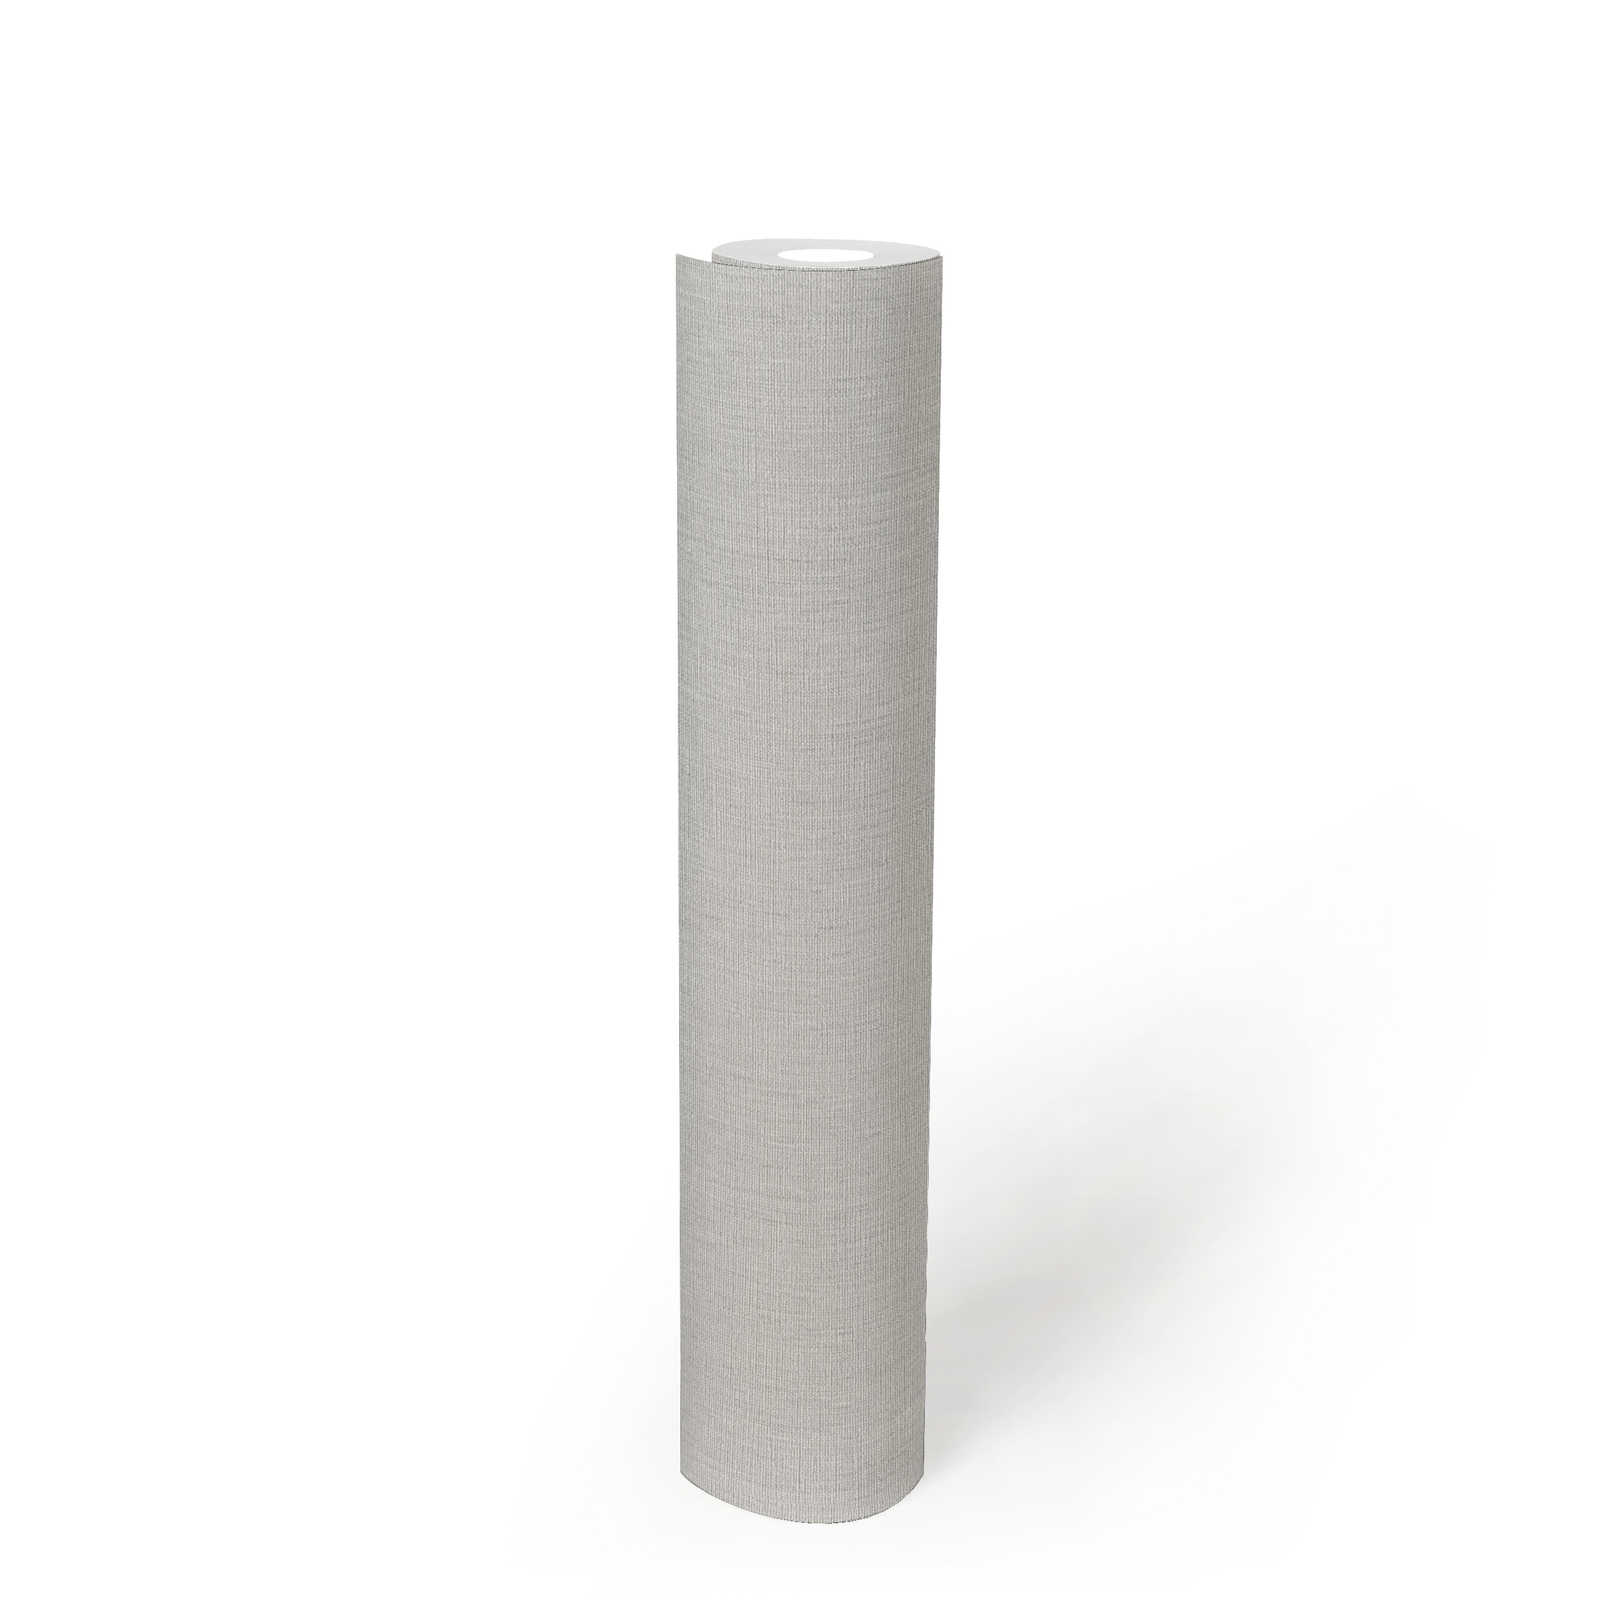             Eenheidsbehang met textiellook en structuur in matte look - grijs, lichtgrijs
        